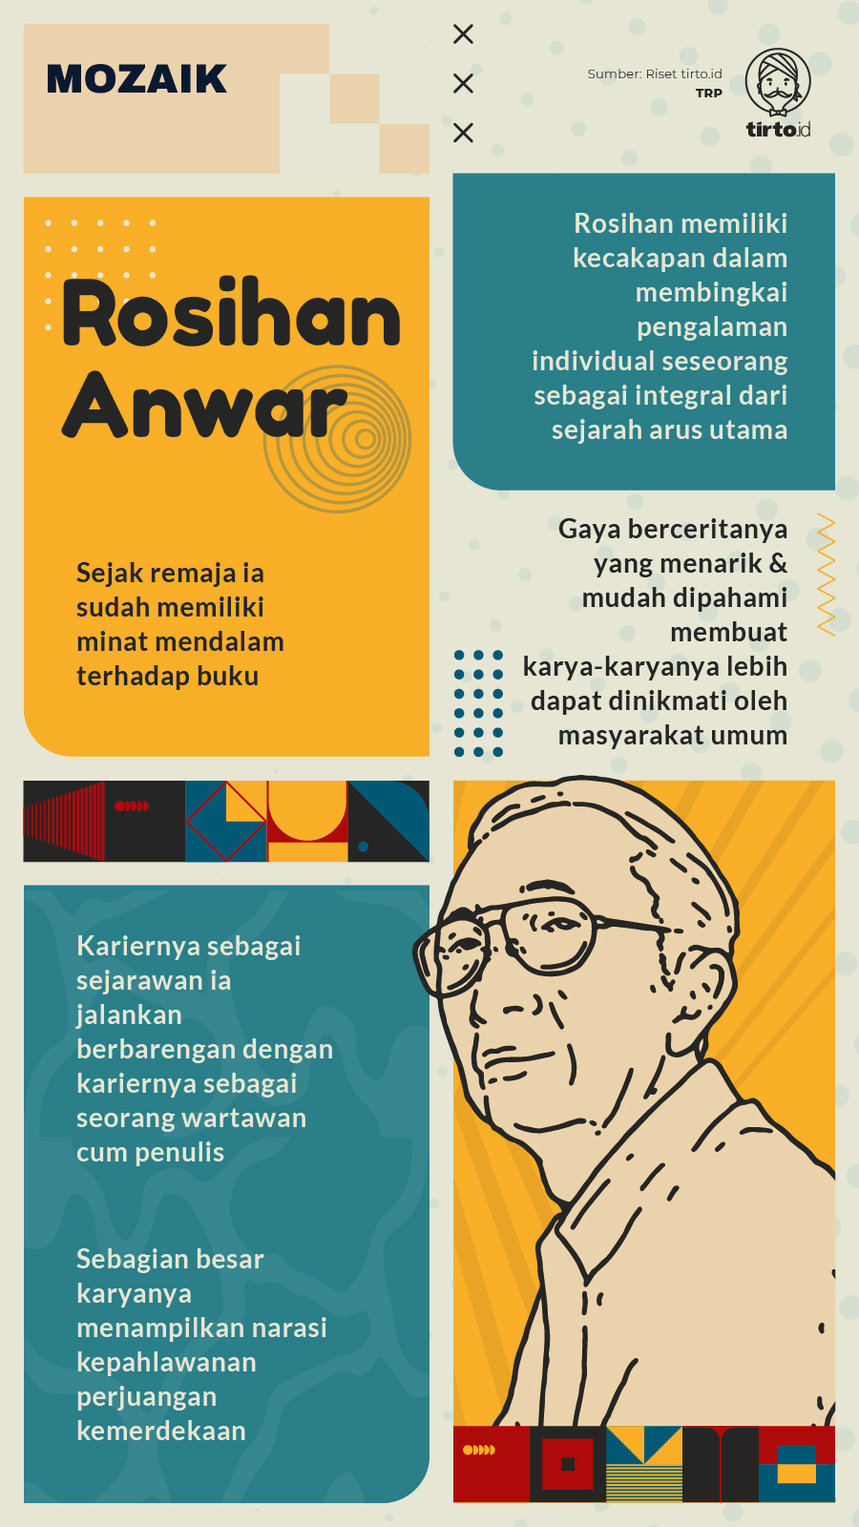 Infografik Mozaik Rosihan Anwar